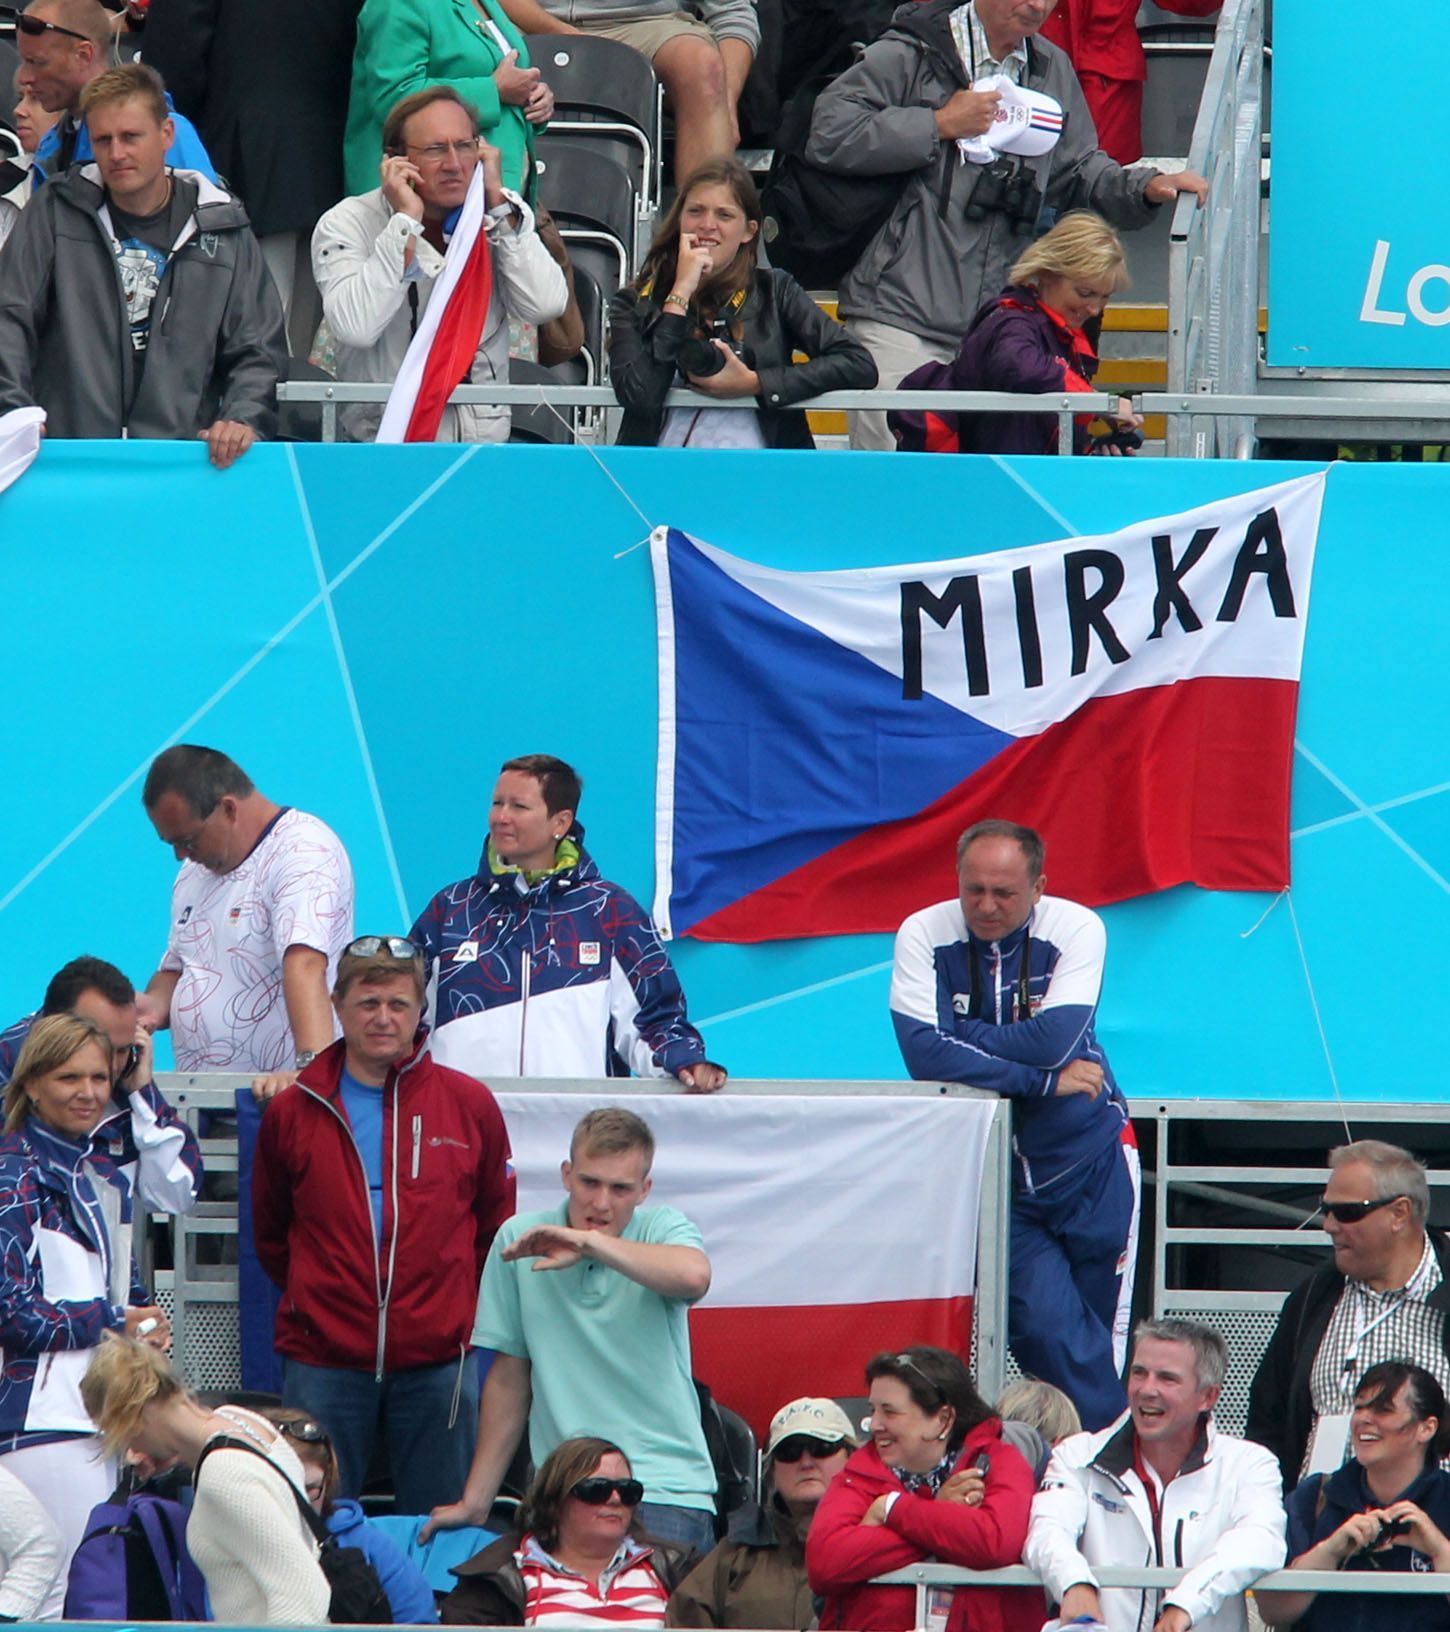 Otec Miroslavy Knapkové (nahoře vlevo telefonuje) sleduje triumf své dcery na OH 2012 v Londýně.